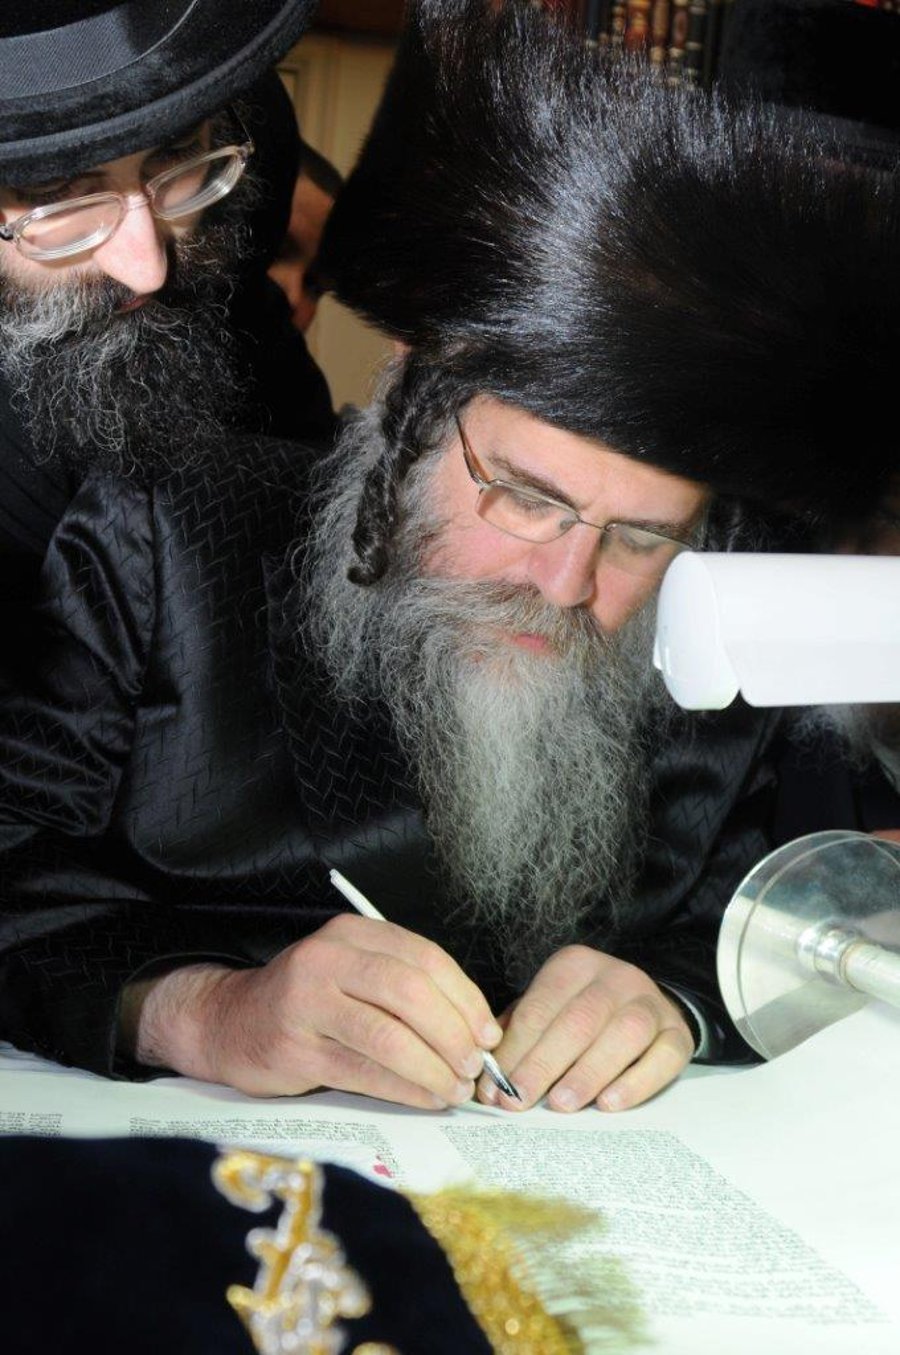 אנטוורפן: ספר תורה חדש הוכנס לבית הכנסת הישן